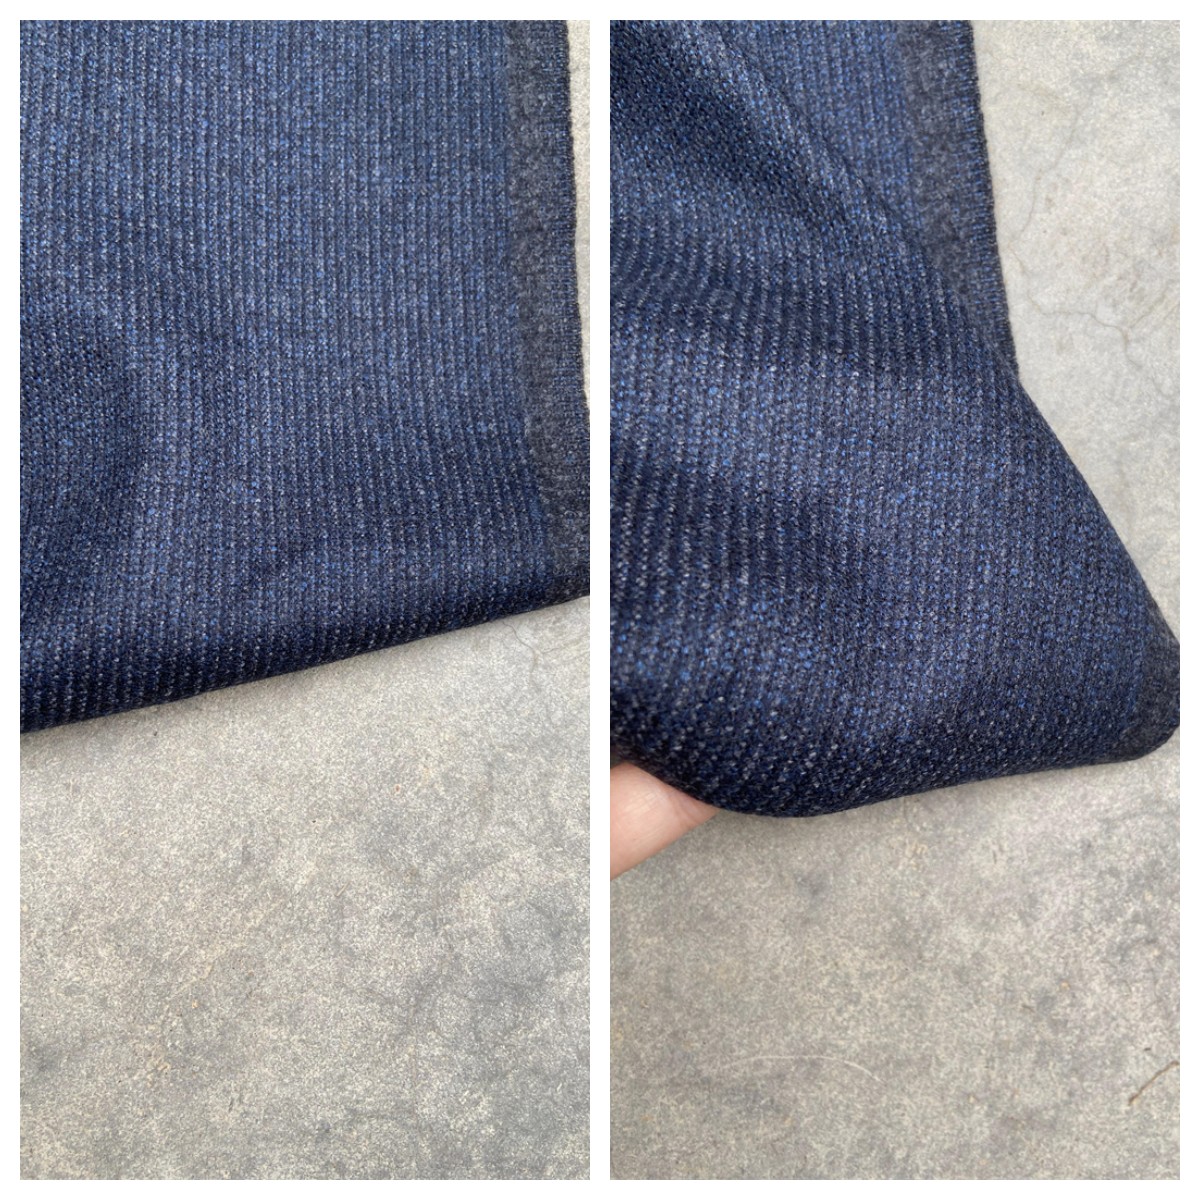 黑灰蓝粗做柔软舒适粗纺纯羊毛进口秋冬面料定制西装西裤套装布料